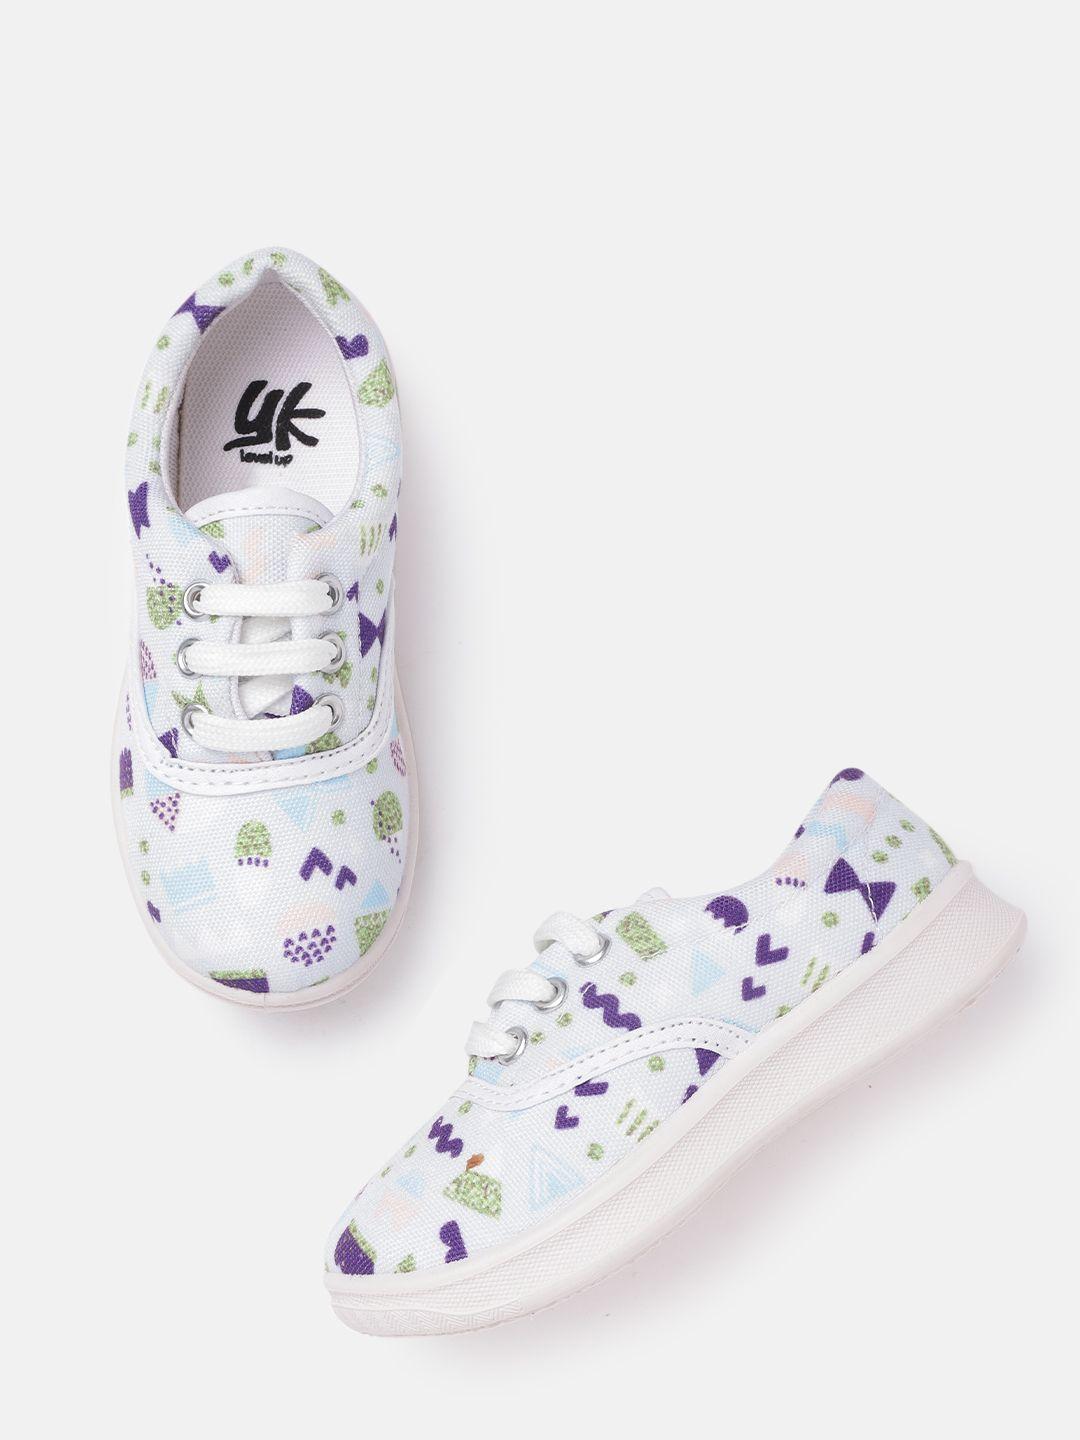 yk girls blue & purple conversational printed sneakers